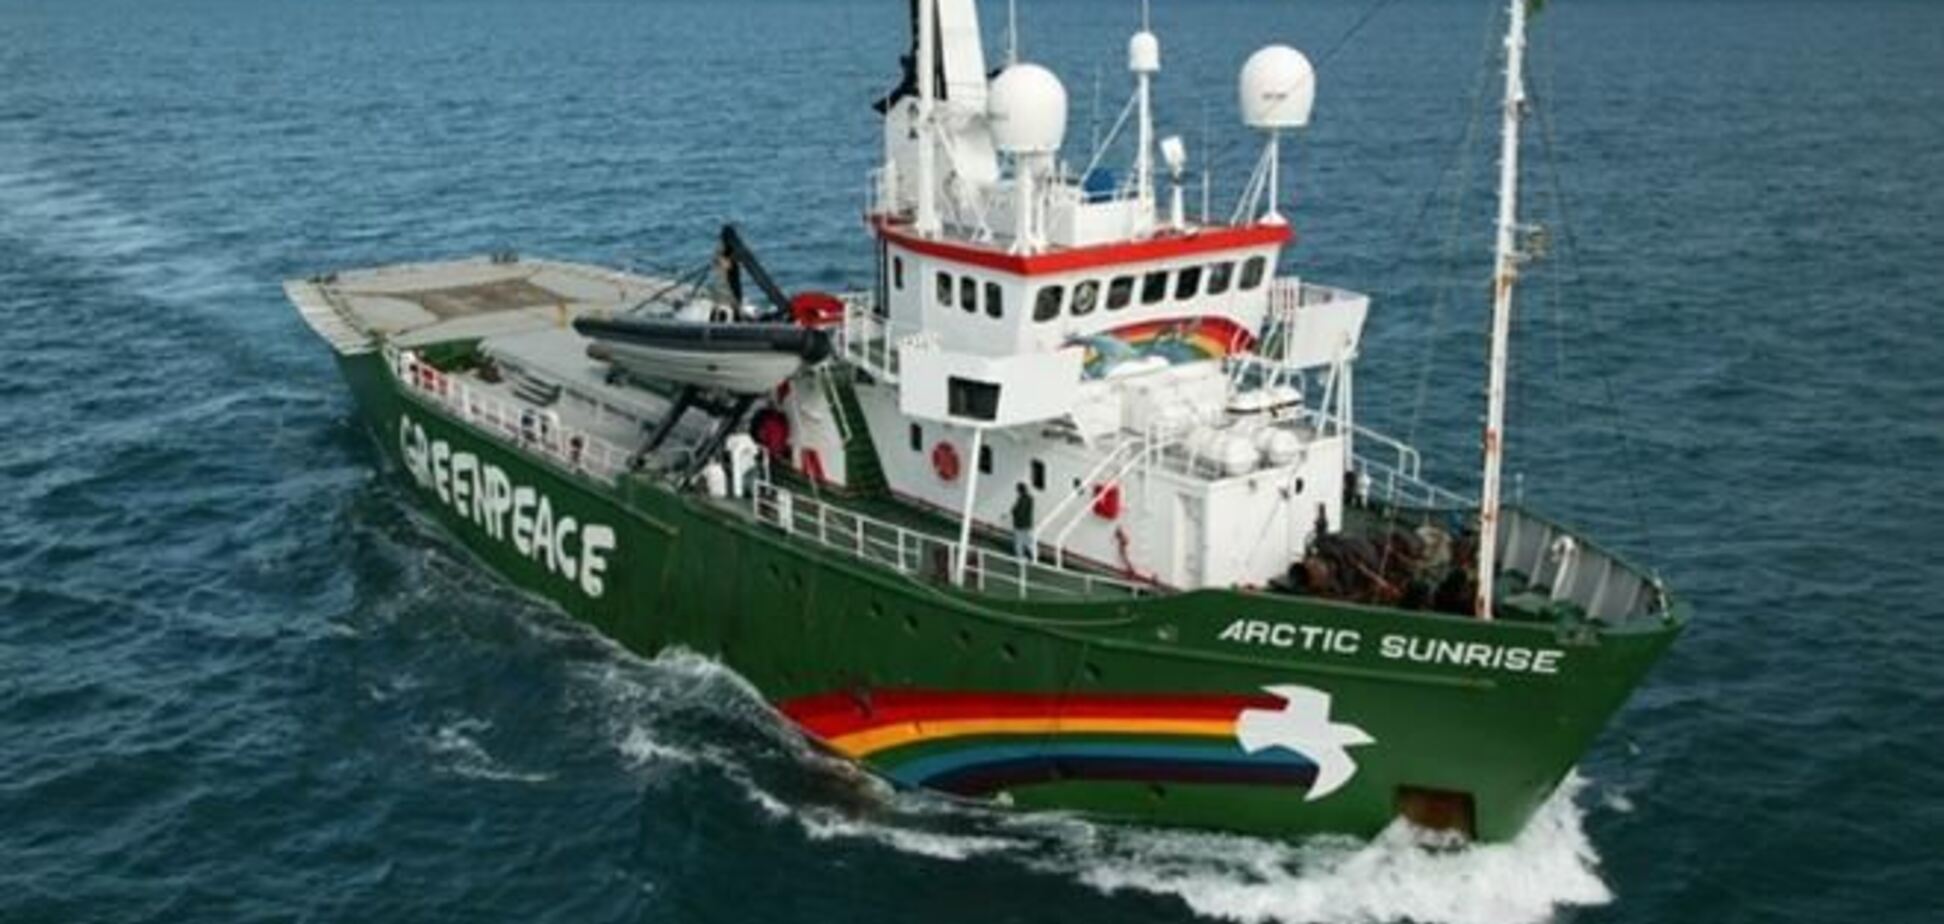 Одному з активістів Greenpeace викликали 'швидку' під час пред'явлення обвинувачення